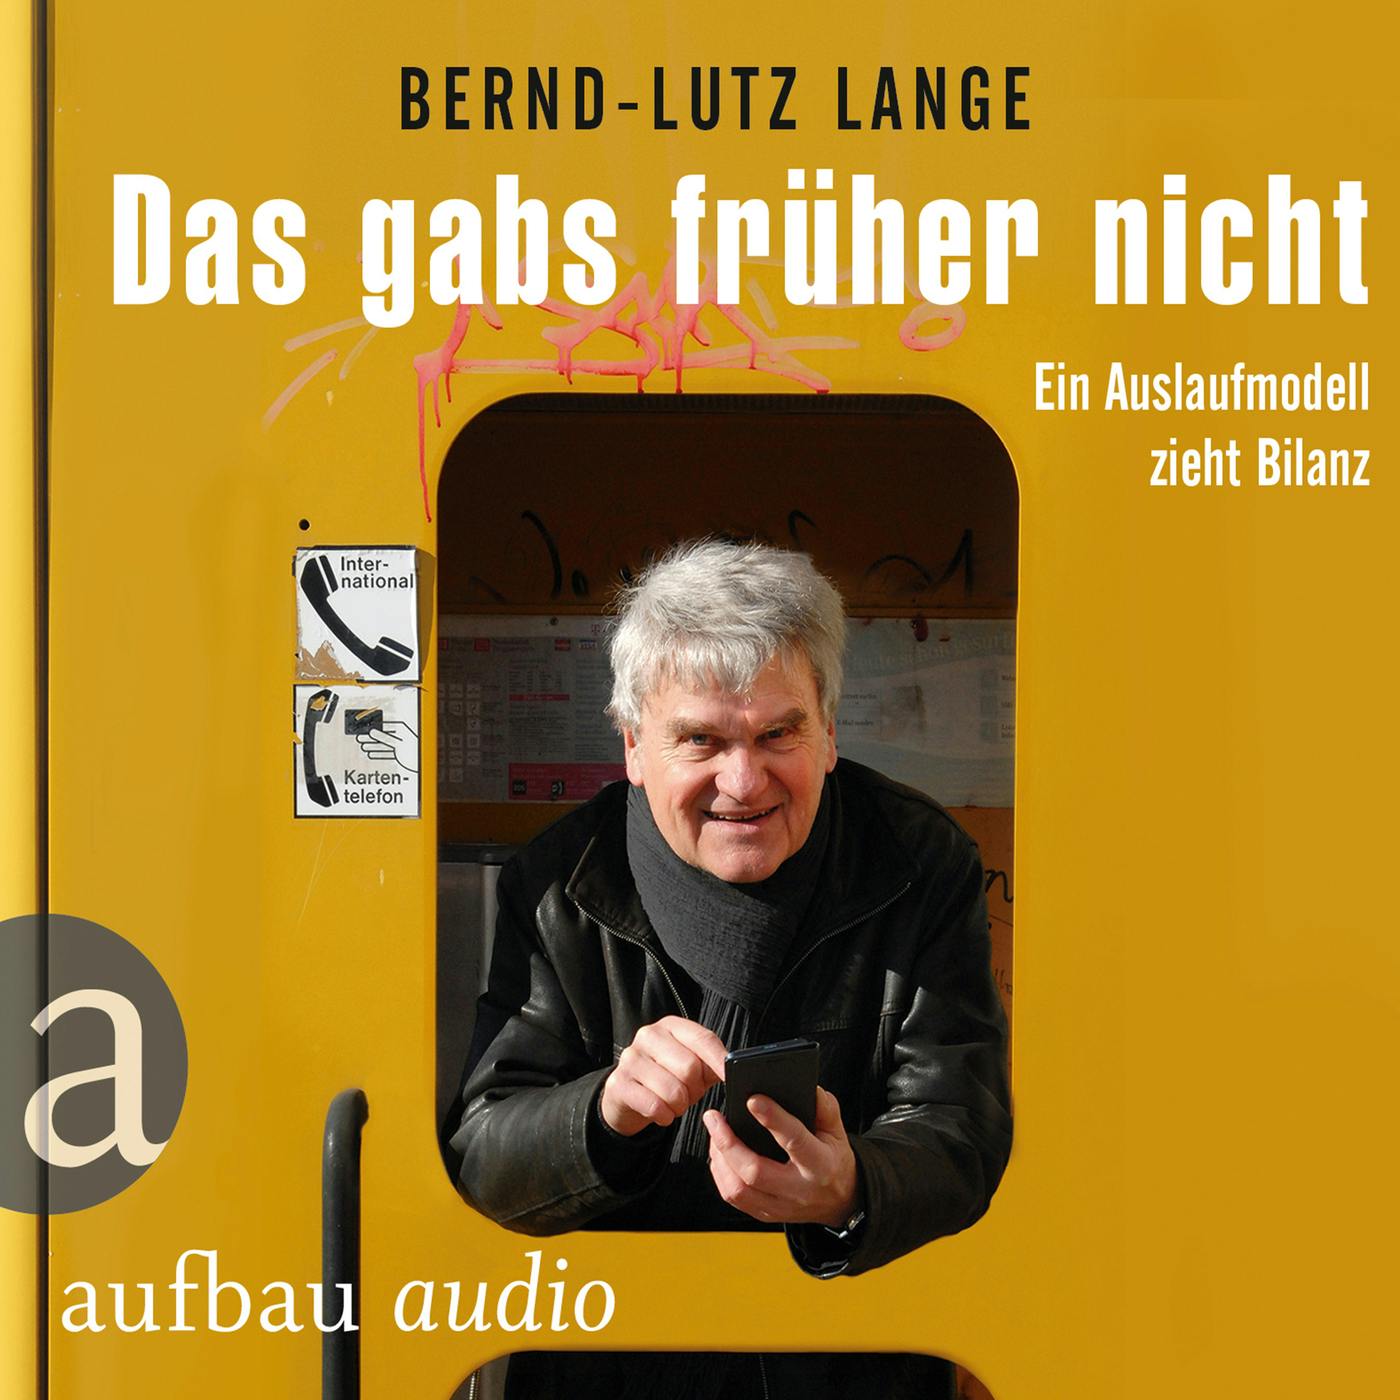 Das gabs früher nicht - Ein Auslaufmodell zieht Bilanz (Live-Mittschnitt einer Lesung) - Bernd-Lutz Lange